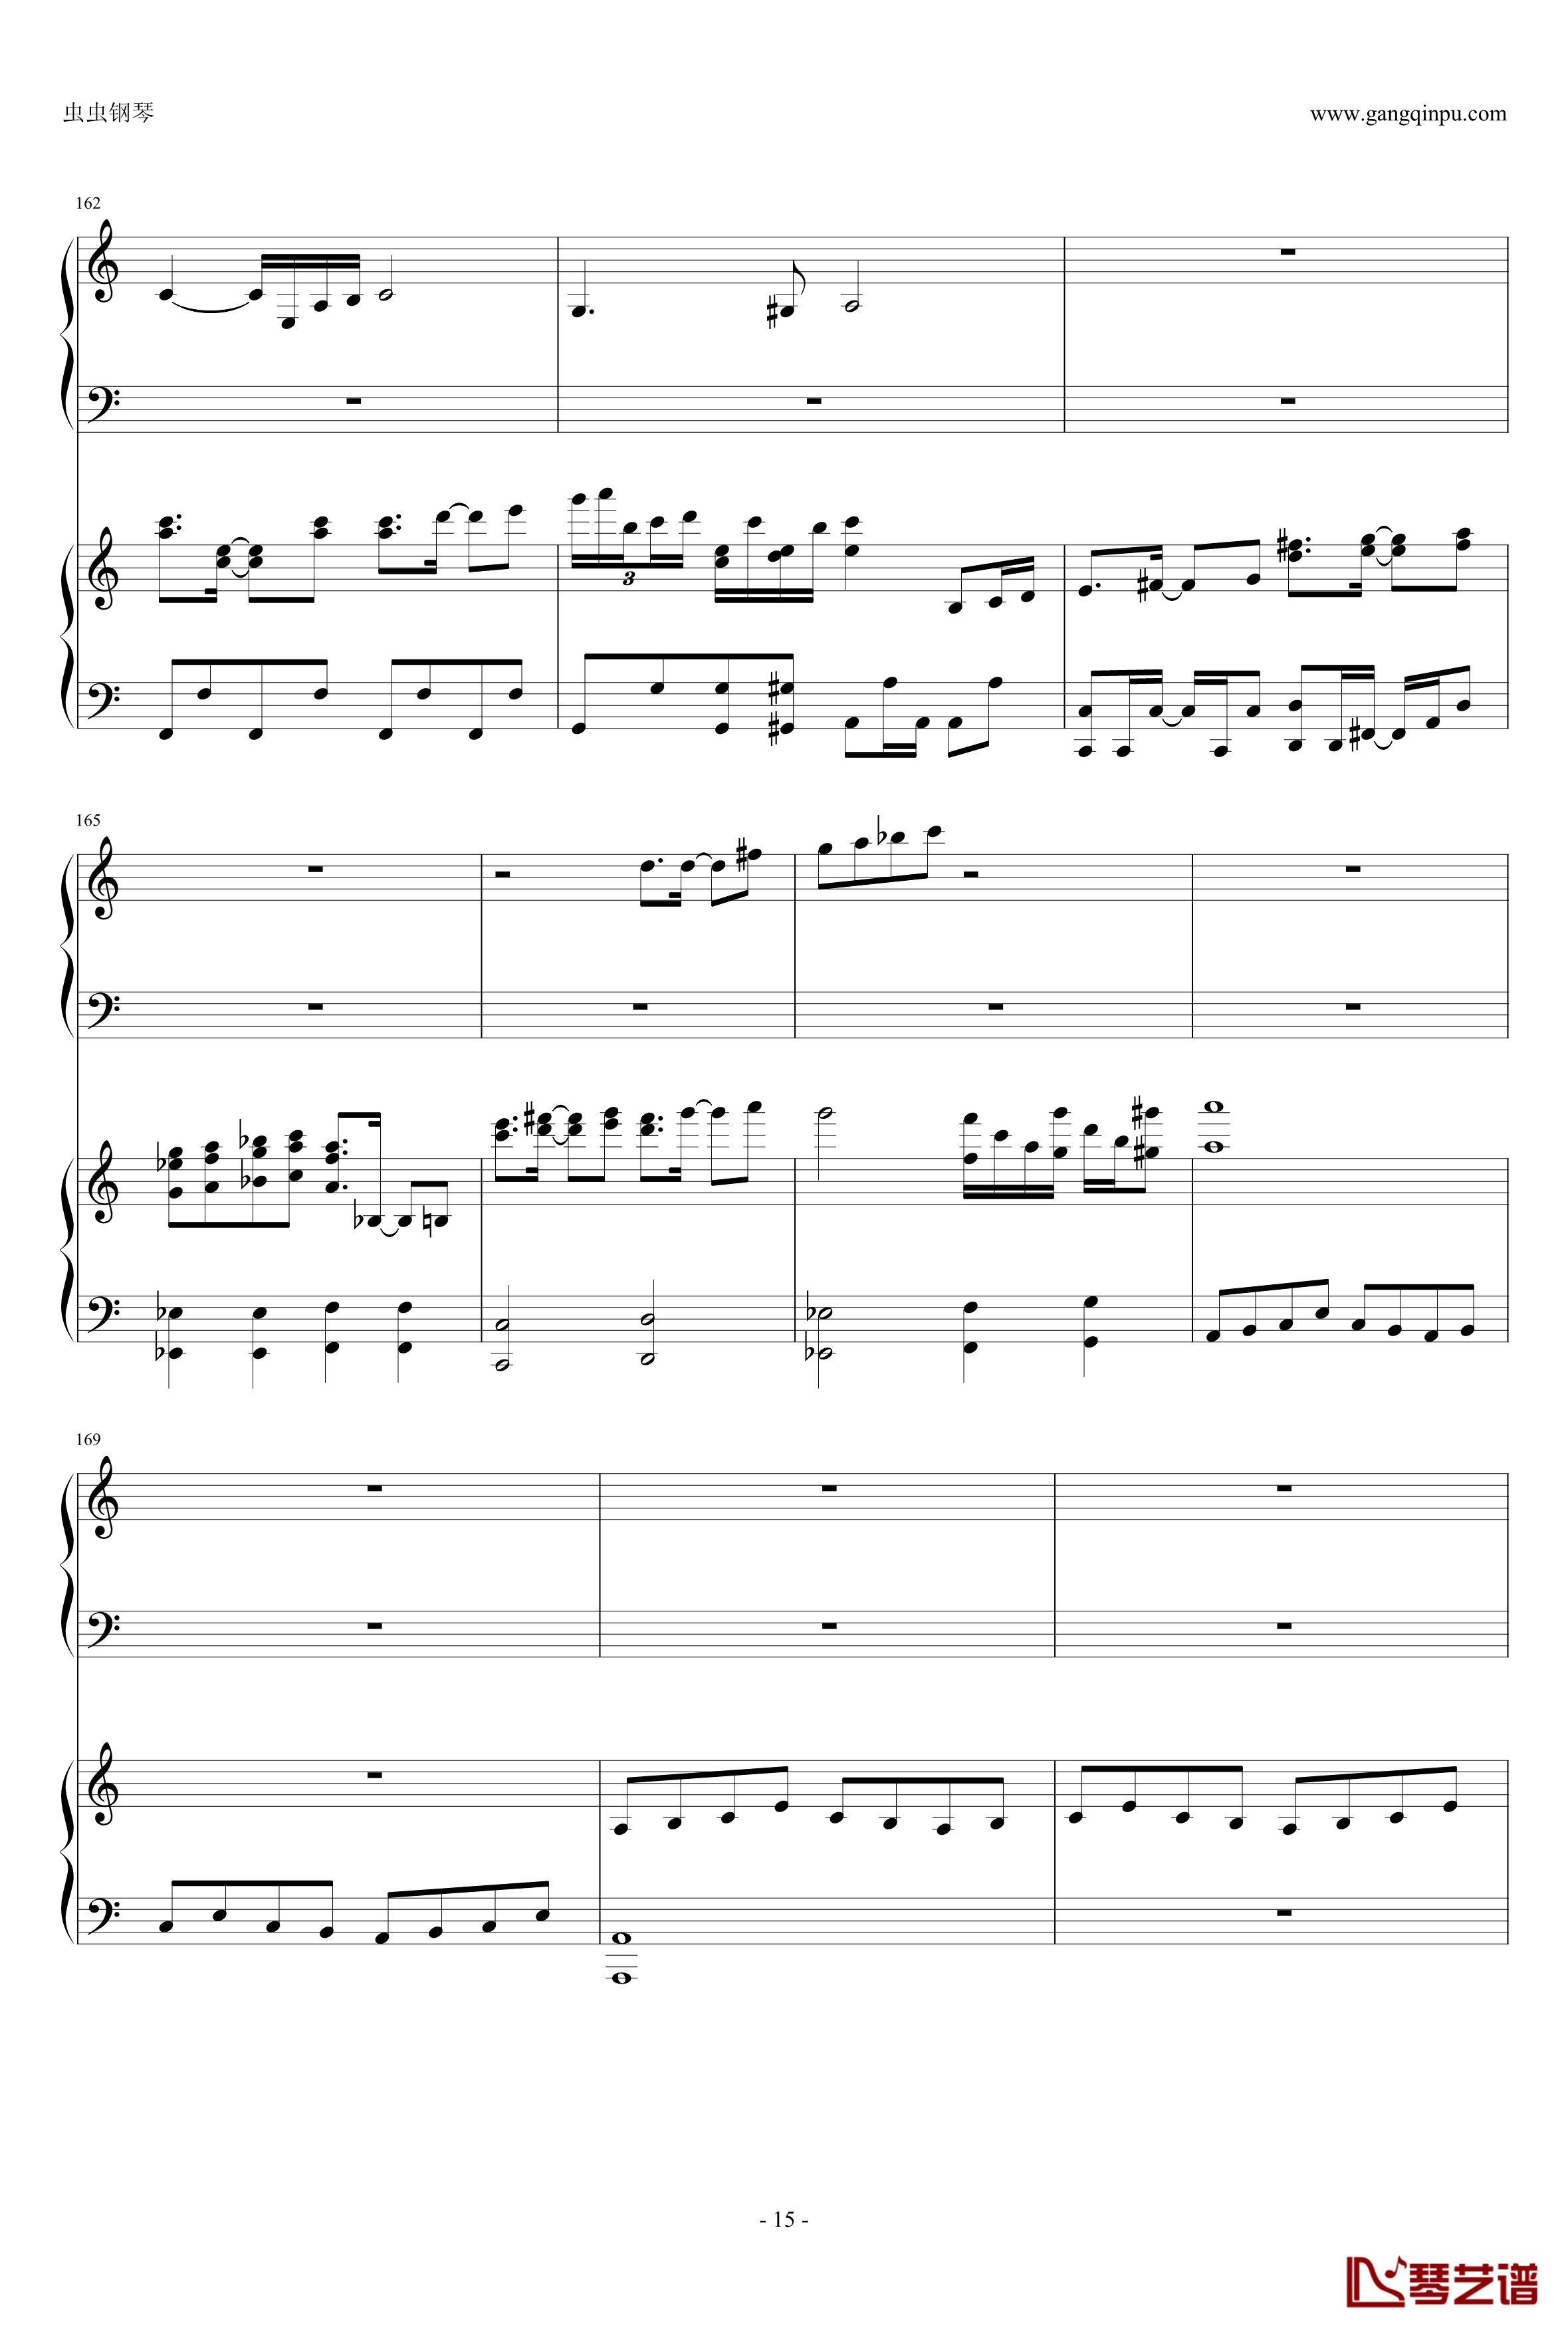 東方連奏曲II Pianoforte钢琴谱-第一部分-东方project15